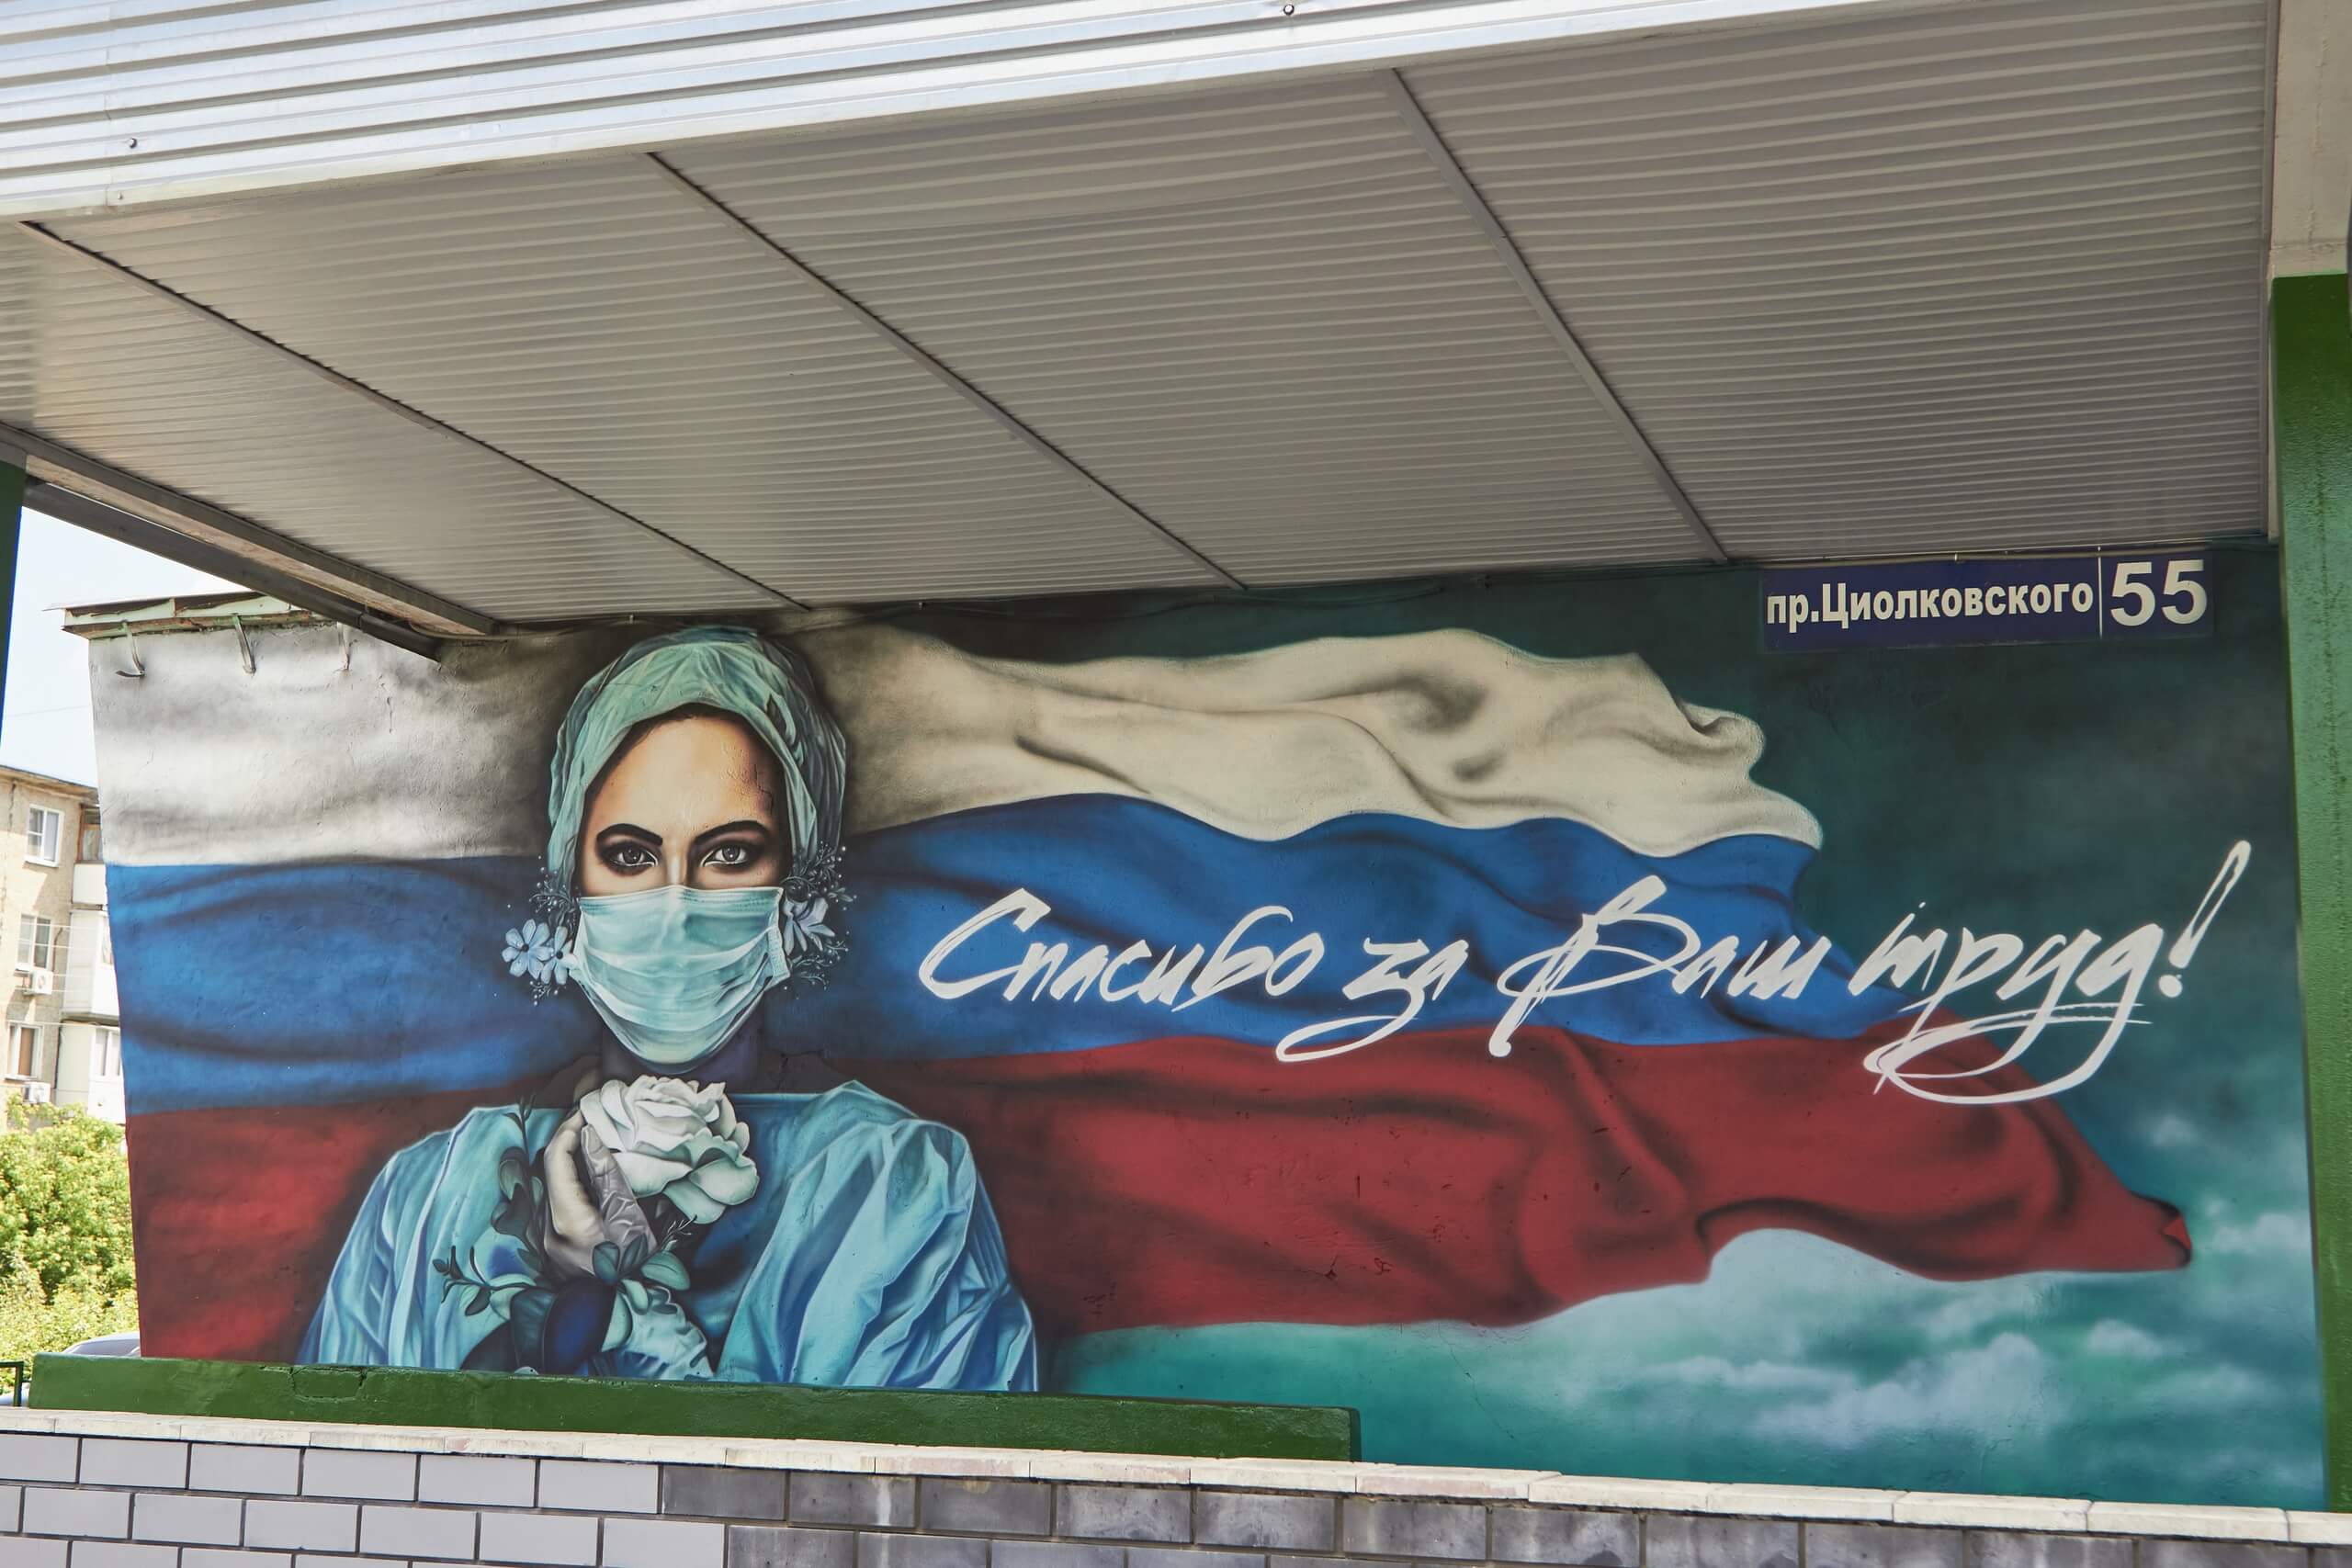 Нижегородские художники могут выиграть гранты в конкурсе граффити о коронавирусе